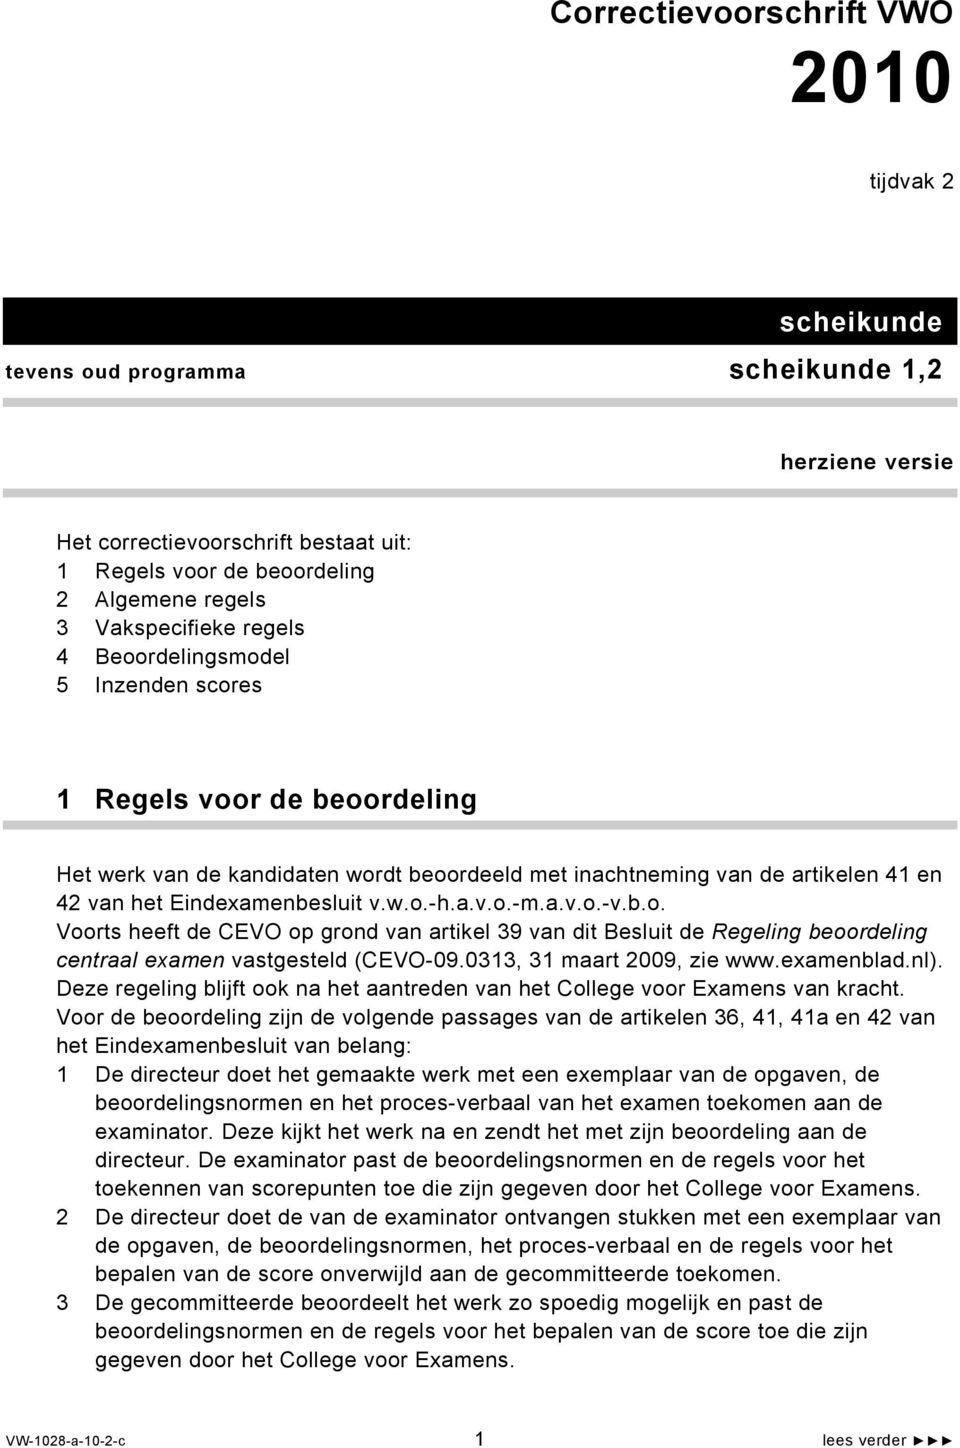 v.w.o.-h.a.v.o.-m.a.v.o.-v.b.o. Voorts heeft de CEV op grond van artikel 39 van dit Besluit de Regeling beoordeling centraal examen vastgesteld (CEV-09.0313, 31 maart 2009, zie www.examenblad.nl).